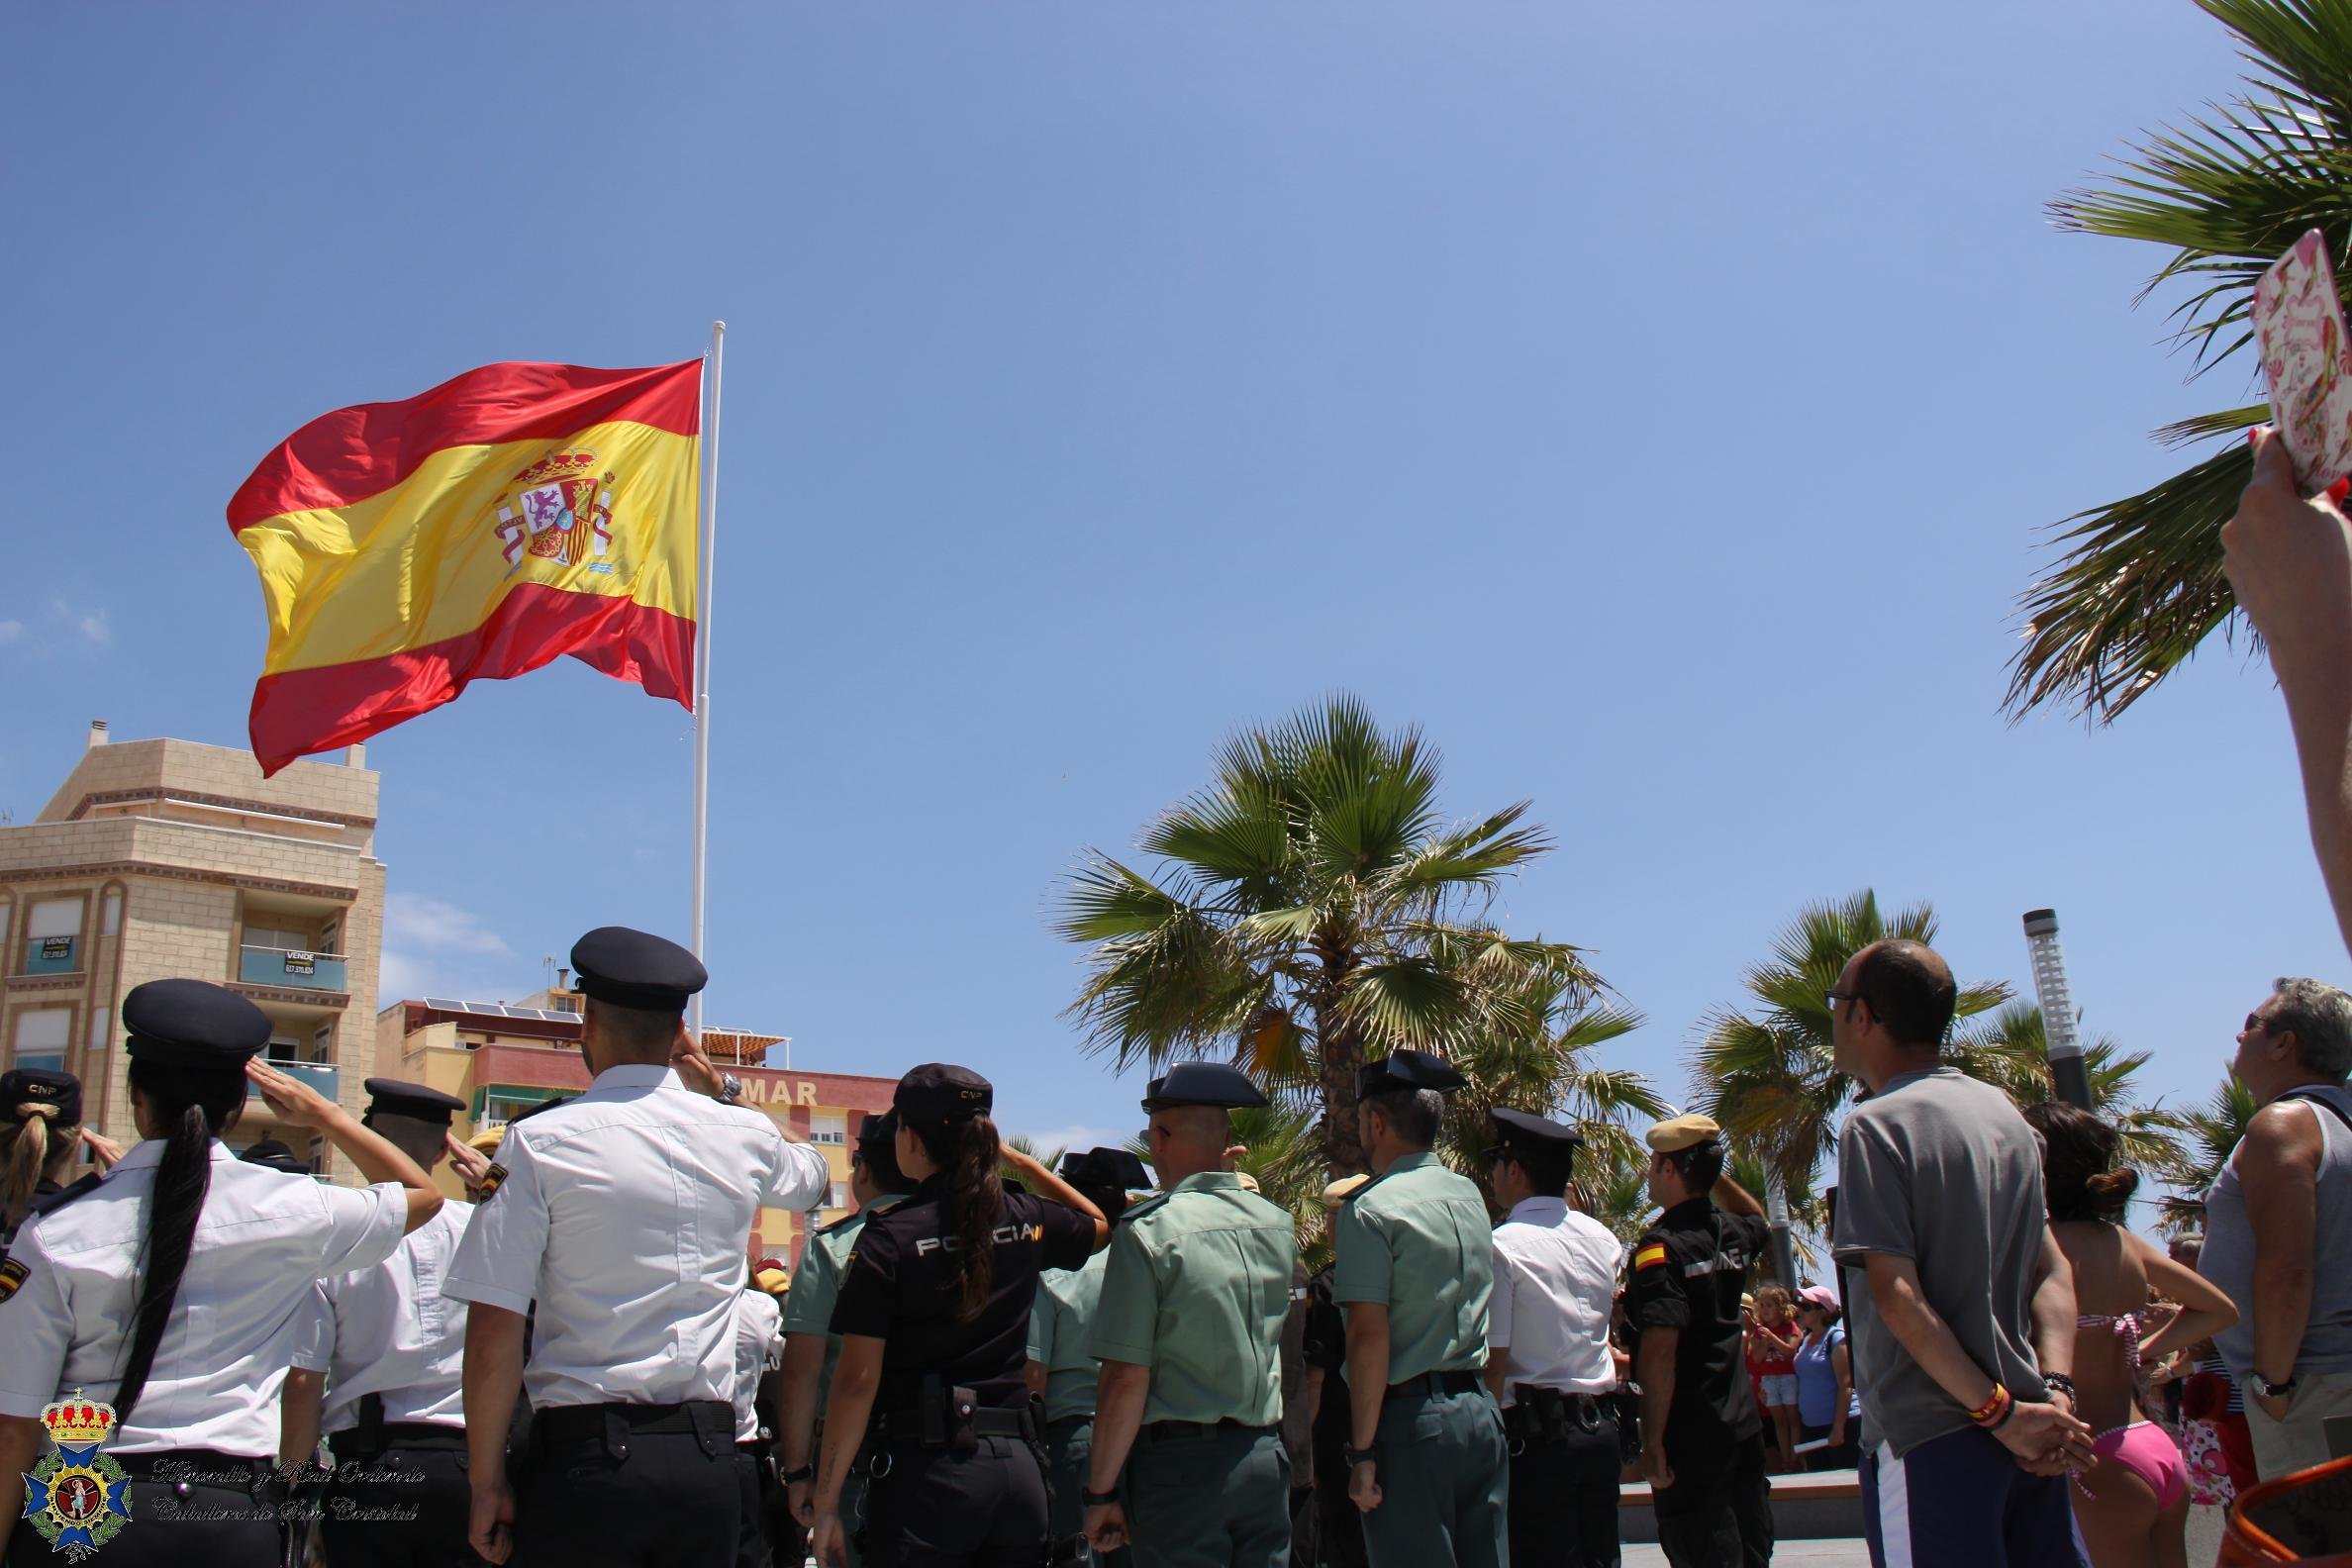 Els policies enviats a Catalunya seran condecorats per un orde de cavallers